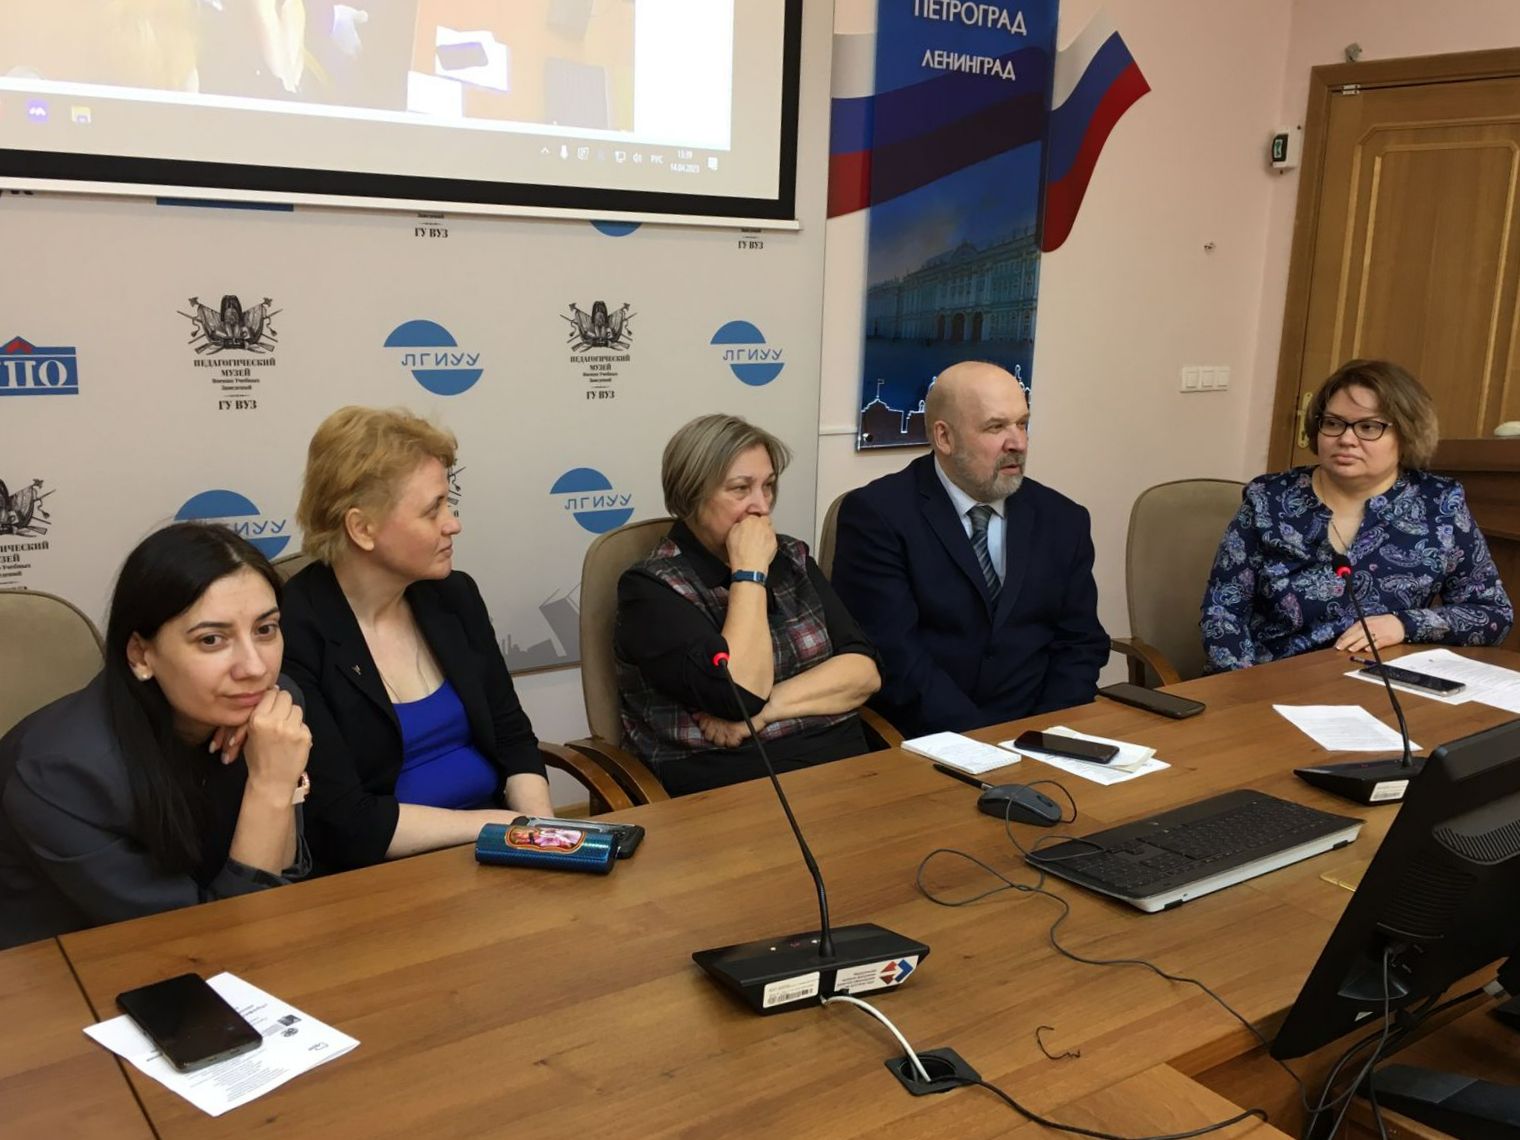 Эксперты МГППУ выступили в Санкт-Петербурге соорганизаторами конференции по профилактике девиантного поведения несовершеннолетних 